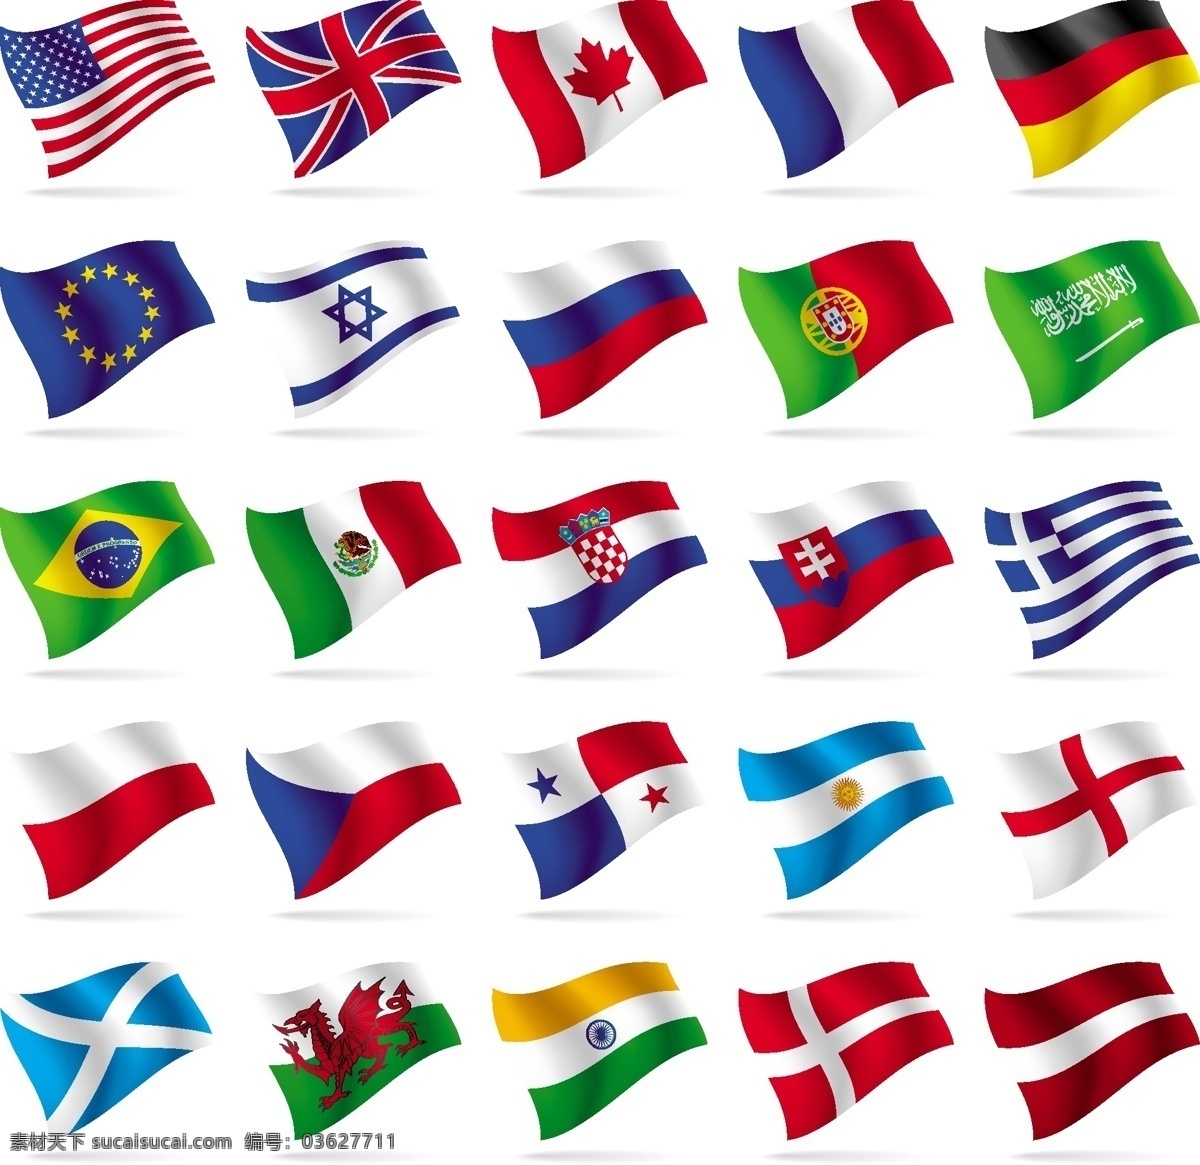 标识 标志 国旗 其他矢量 矢量素材 矢量图库 世界 世界各国 矢量 模板下载 世界各国国旗 图标 其他矢量图